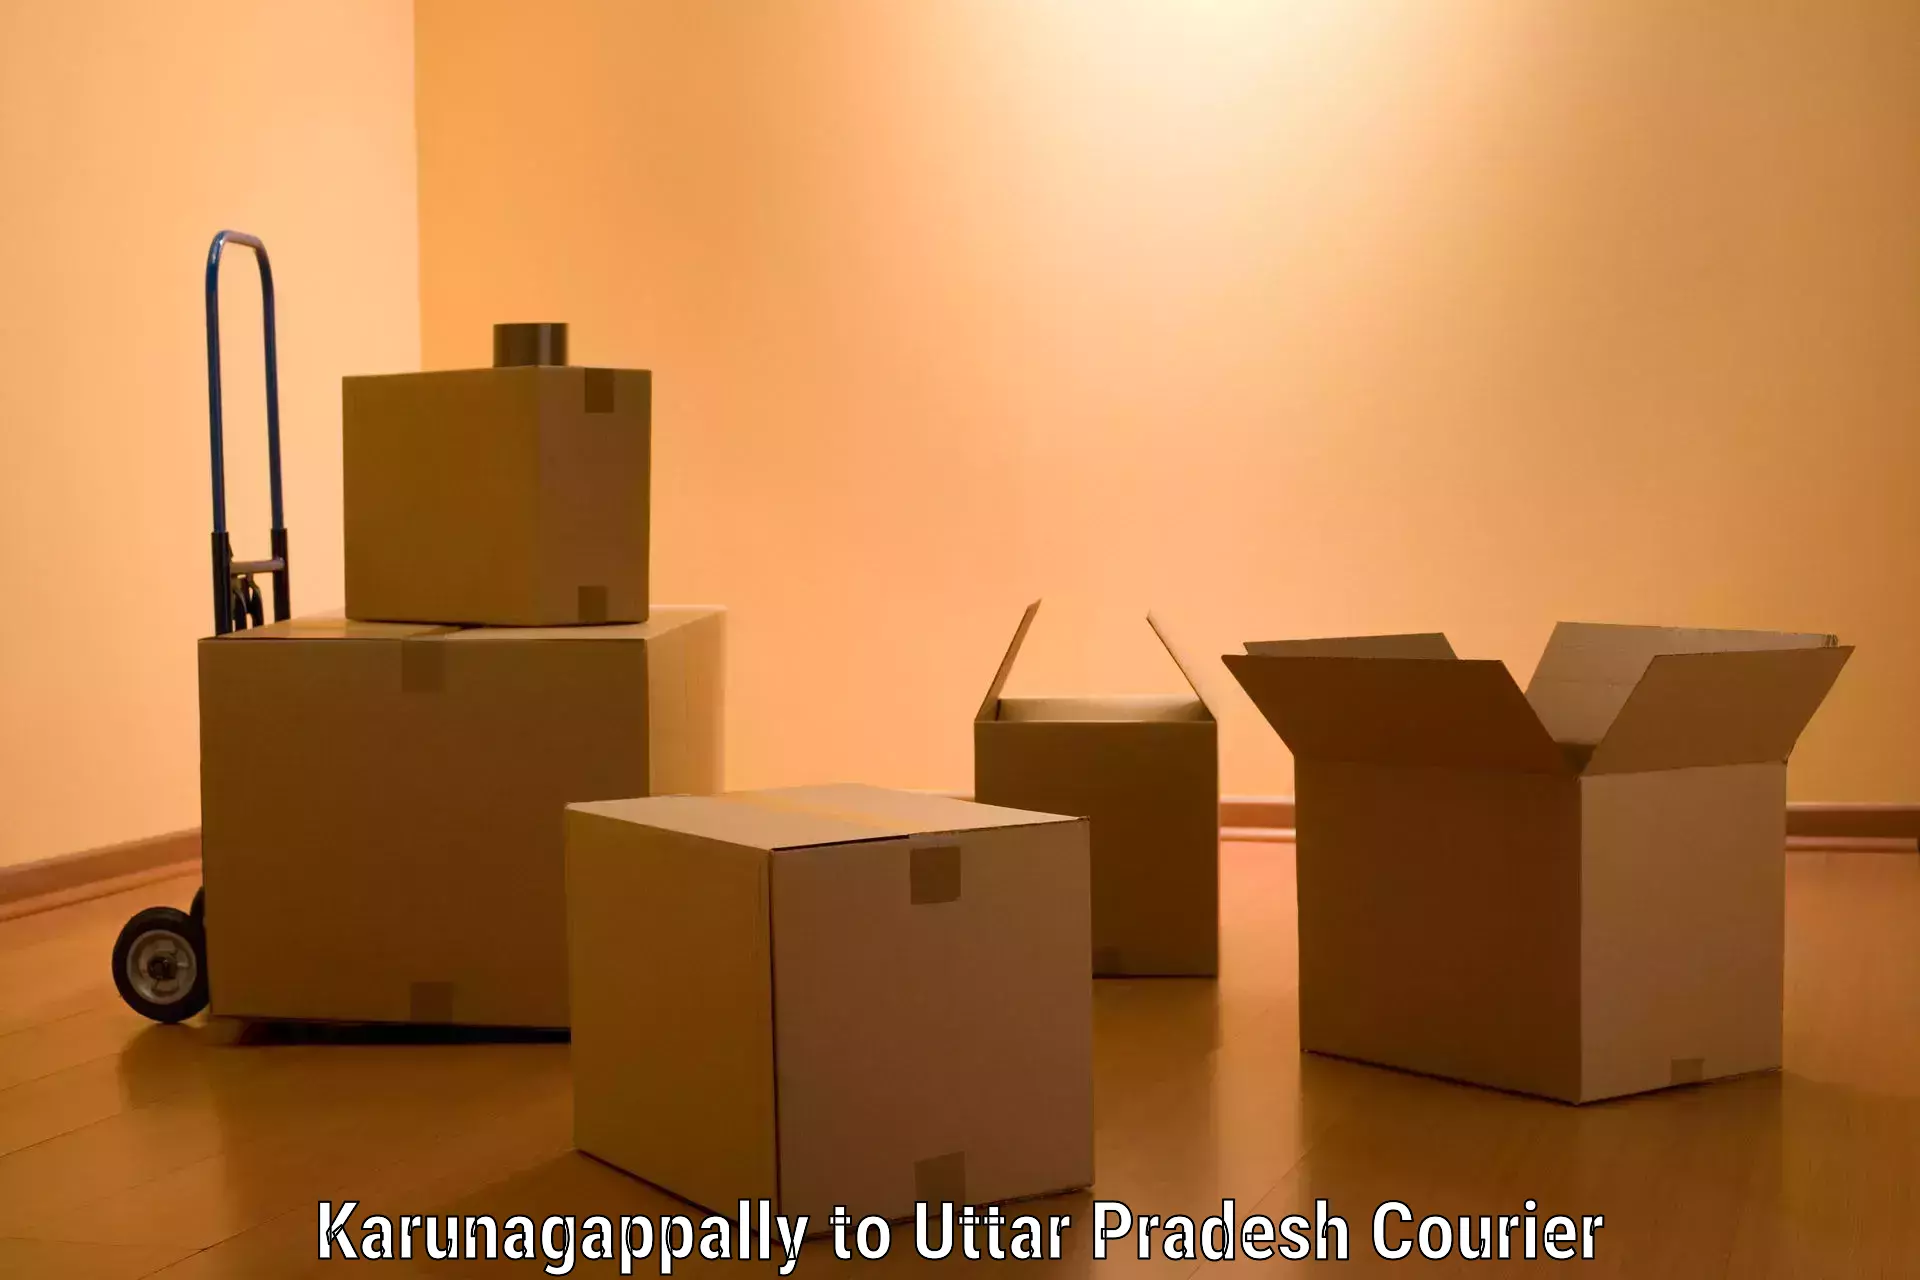 Budget-friendly movers Karunagappally to Varanasi